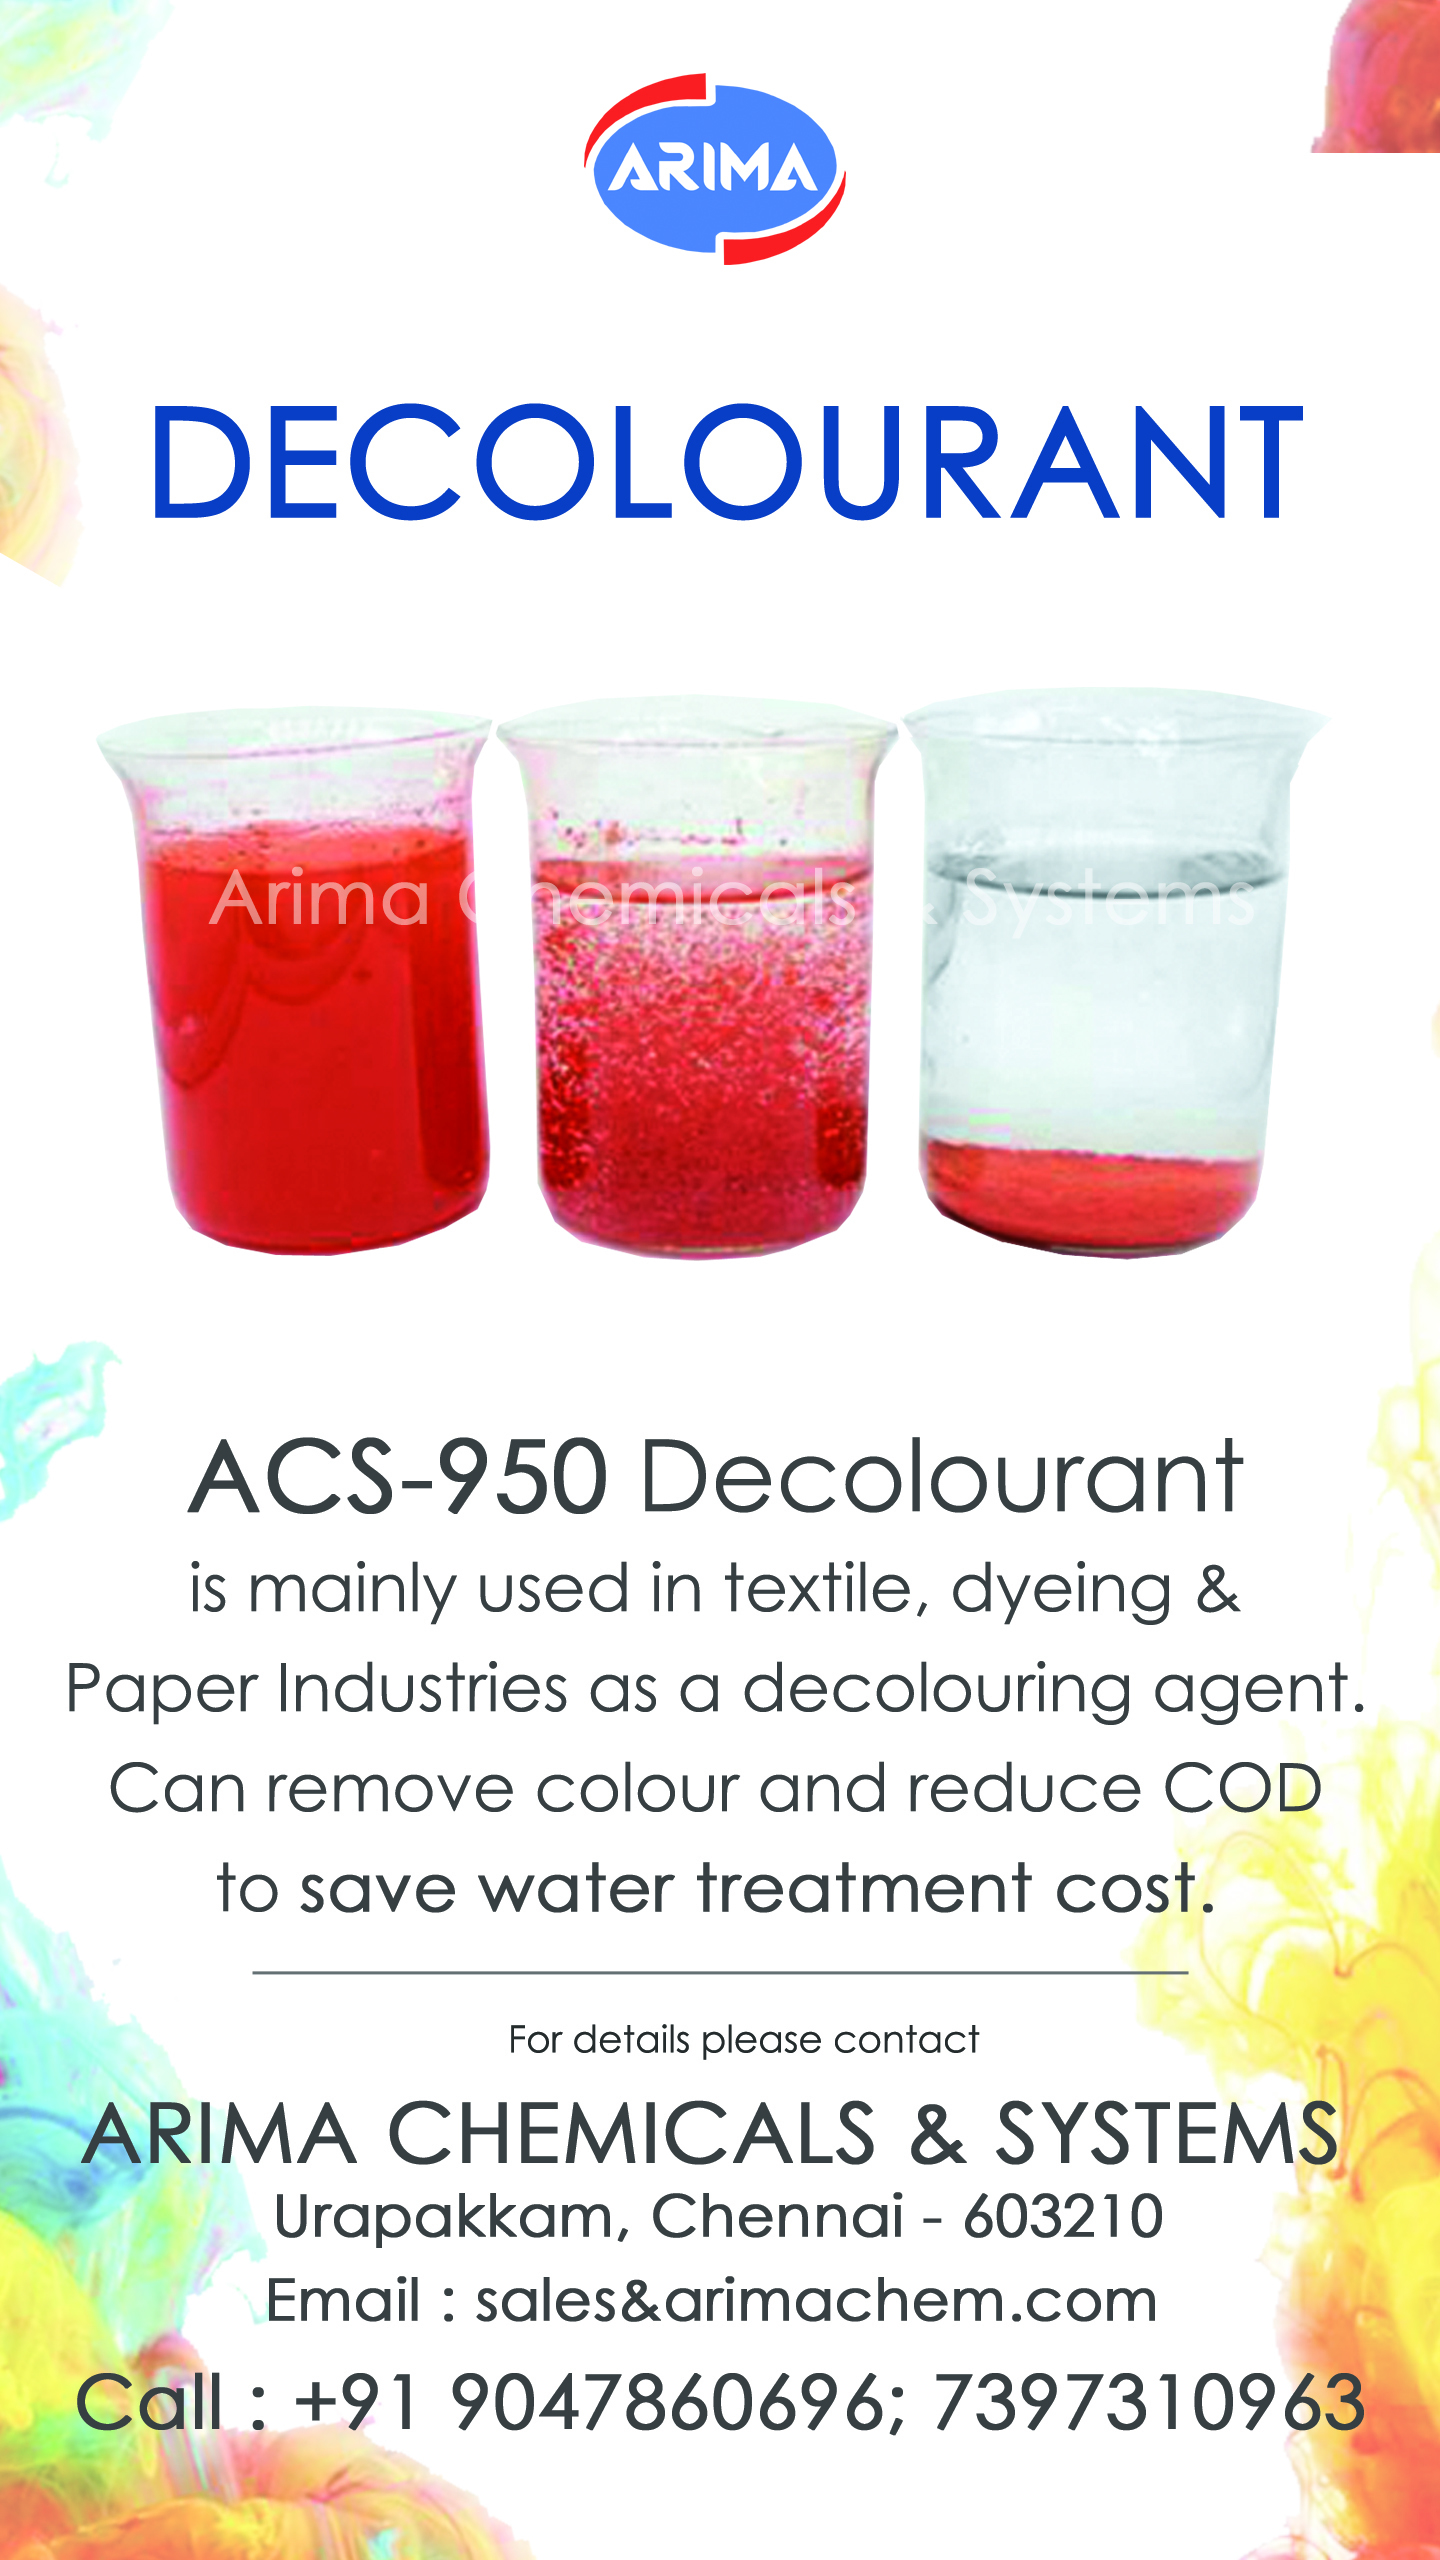 Decolorant ACS-950